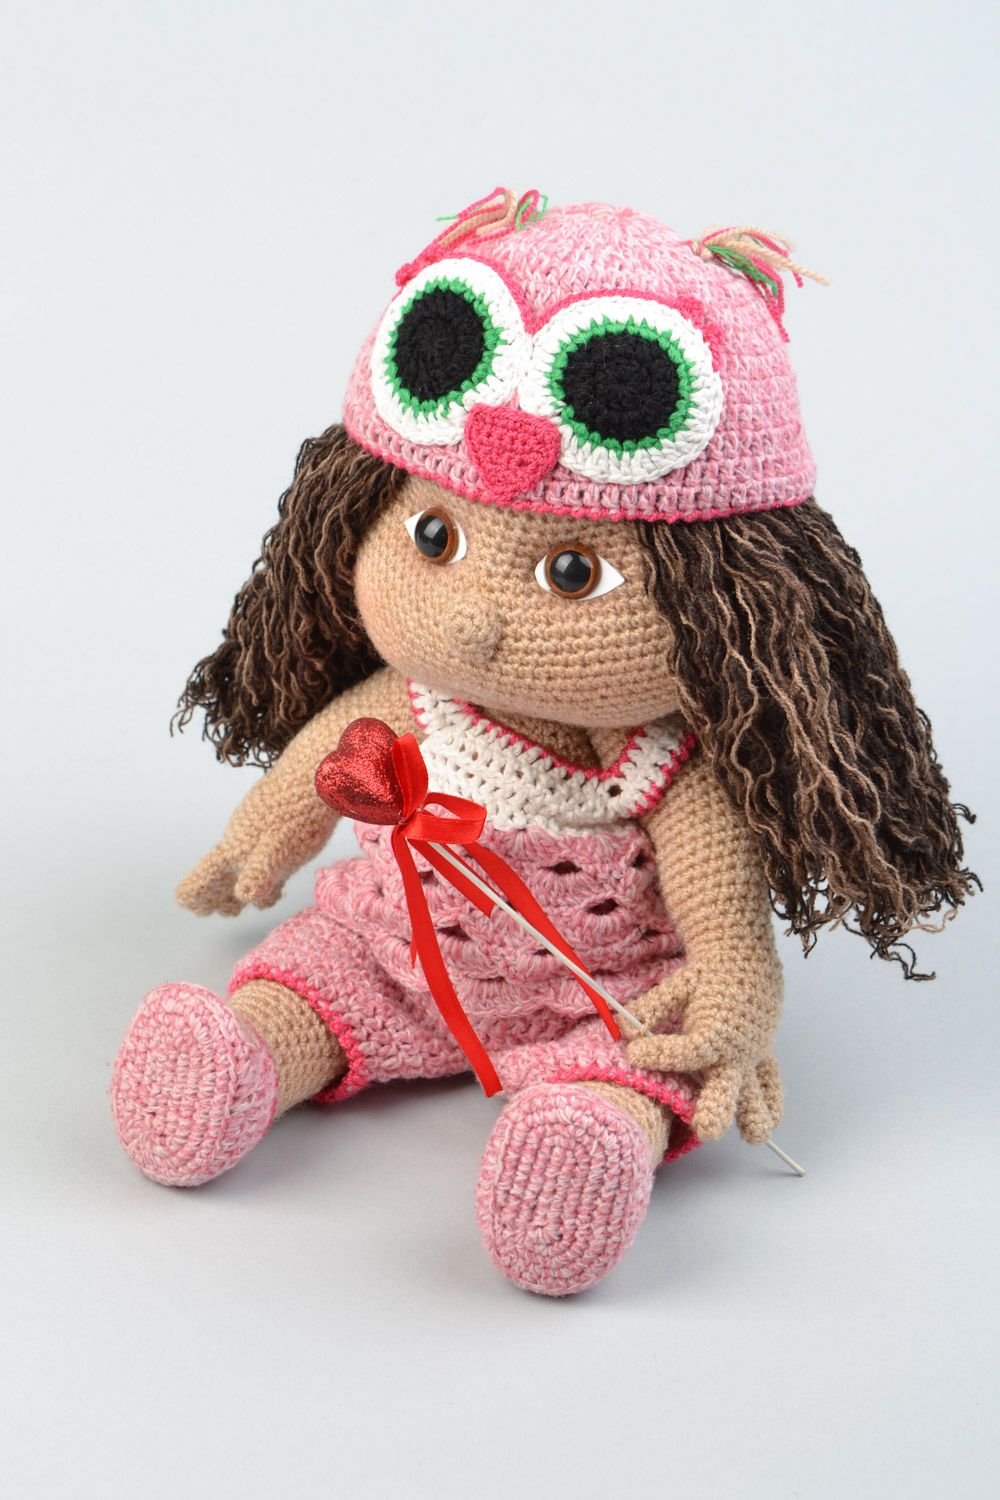 Handmade soft crochet toy girl doll for children photo 1